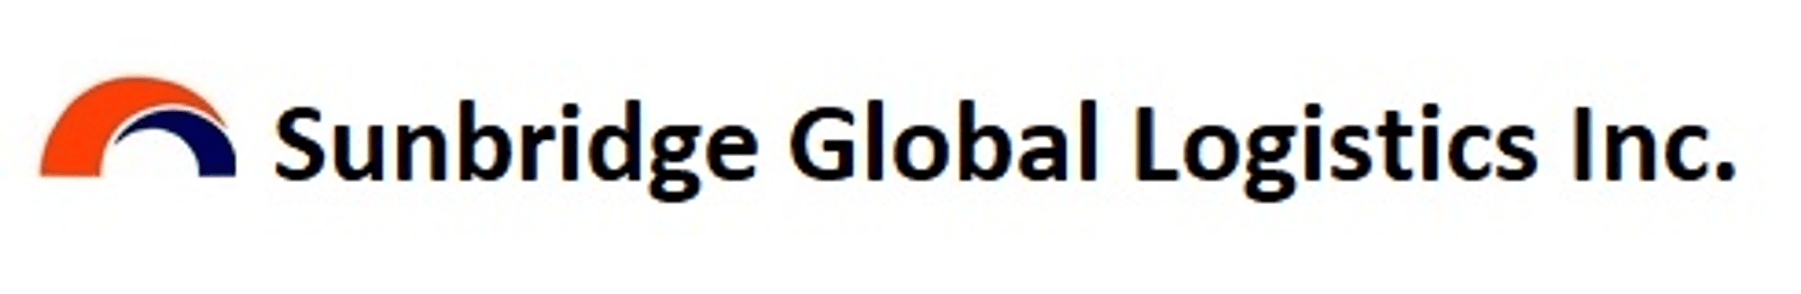 SunBridge Global Logistics Inc.